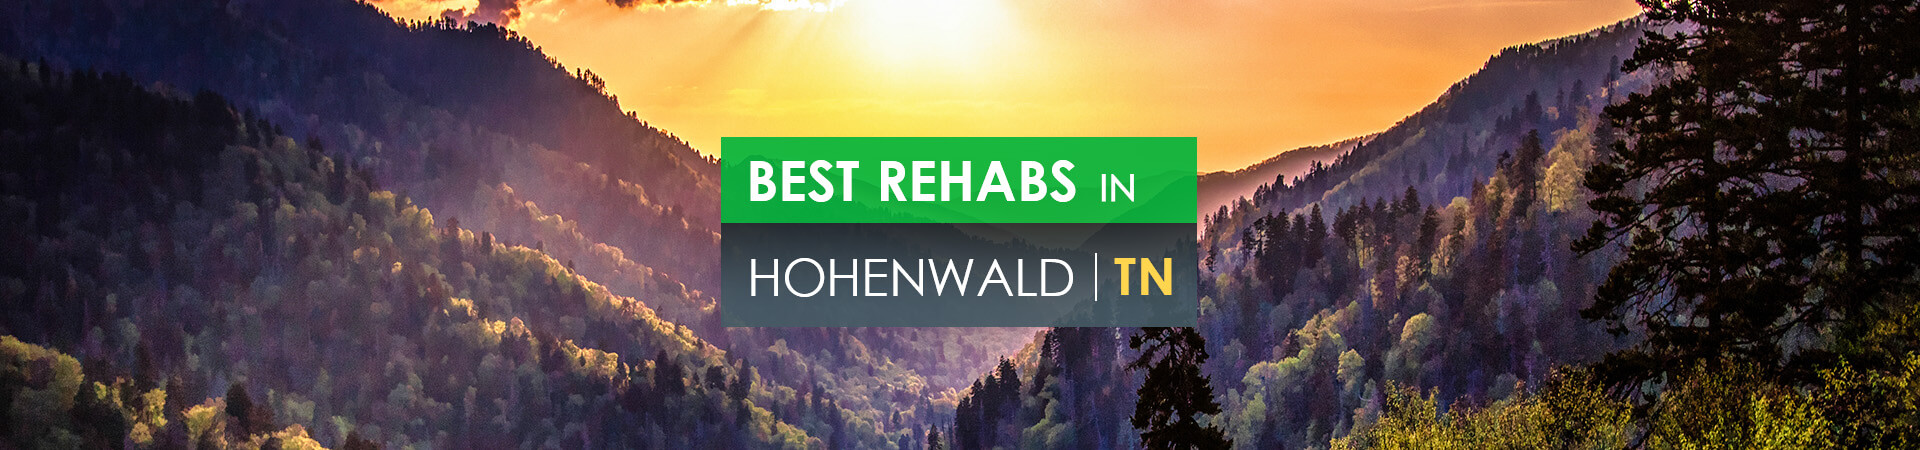 Best rehabs in Hohenwald, TN